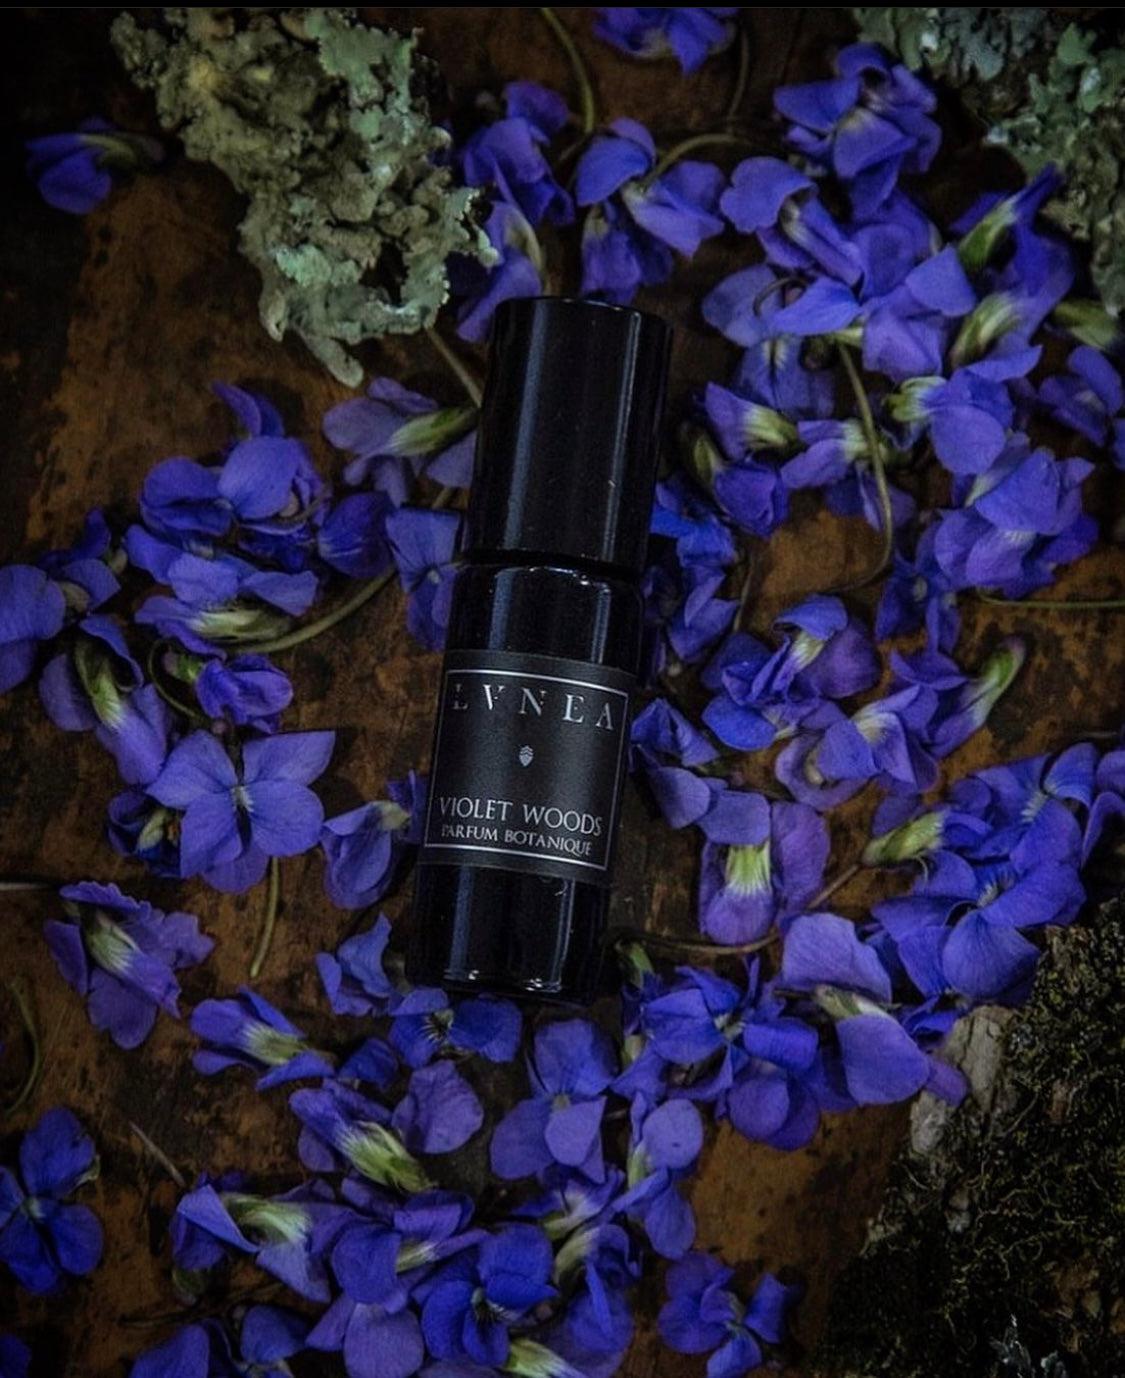 VIOLET WOODS | Parfum Botanique - crushed violet leaves and petals, soft woods